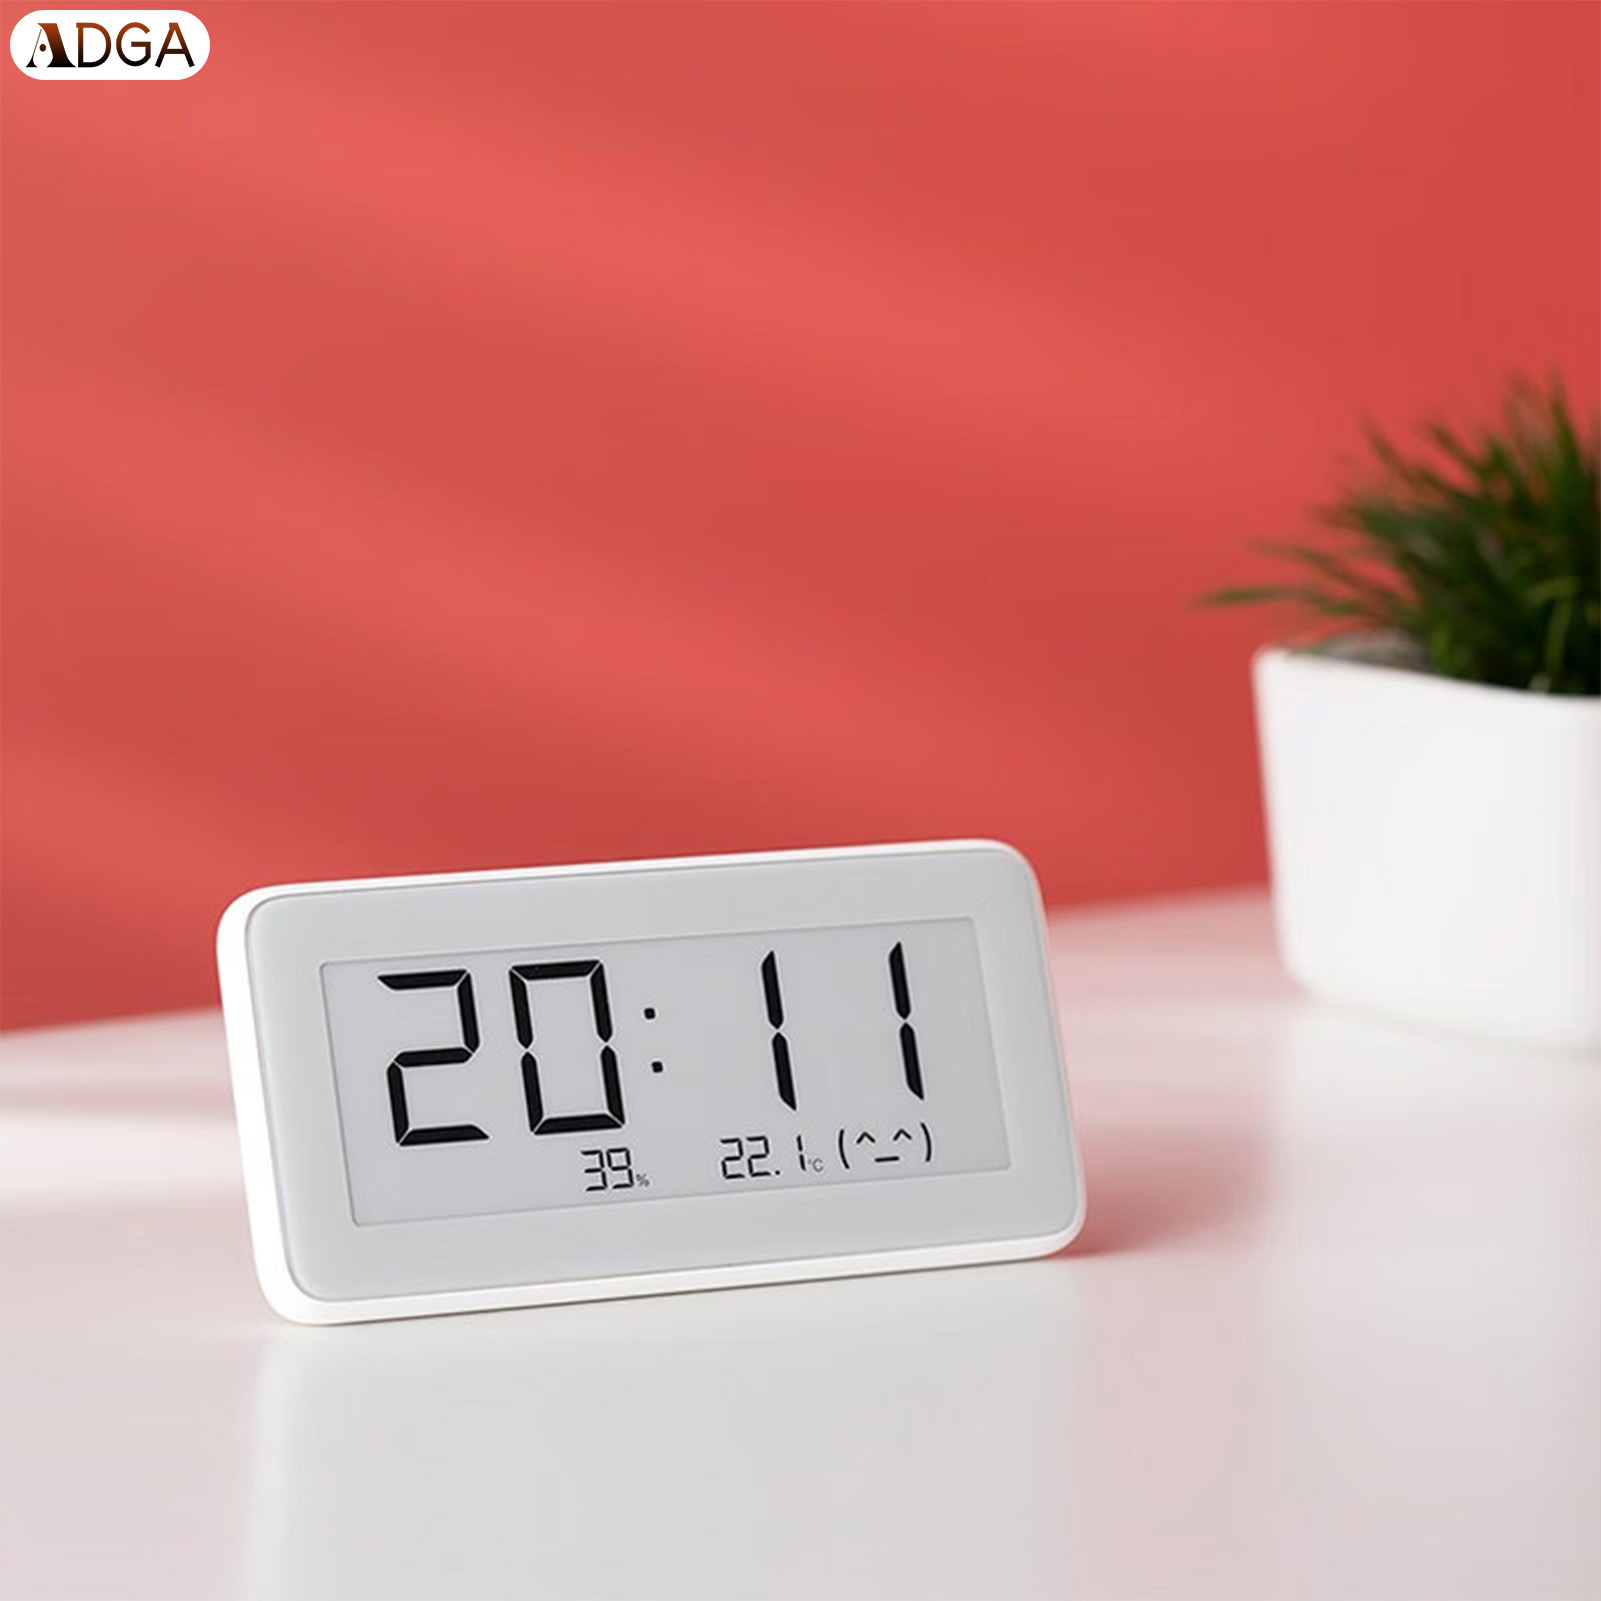 Adga giám sát thông minh ứng dụng máy đo độ ẩm điện tử chuyên nghiệp và